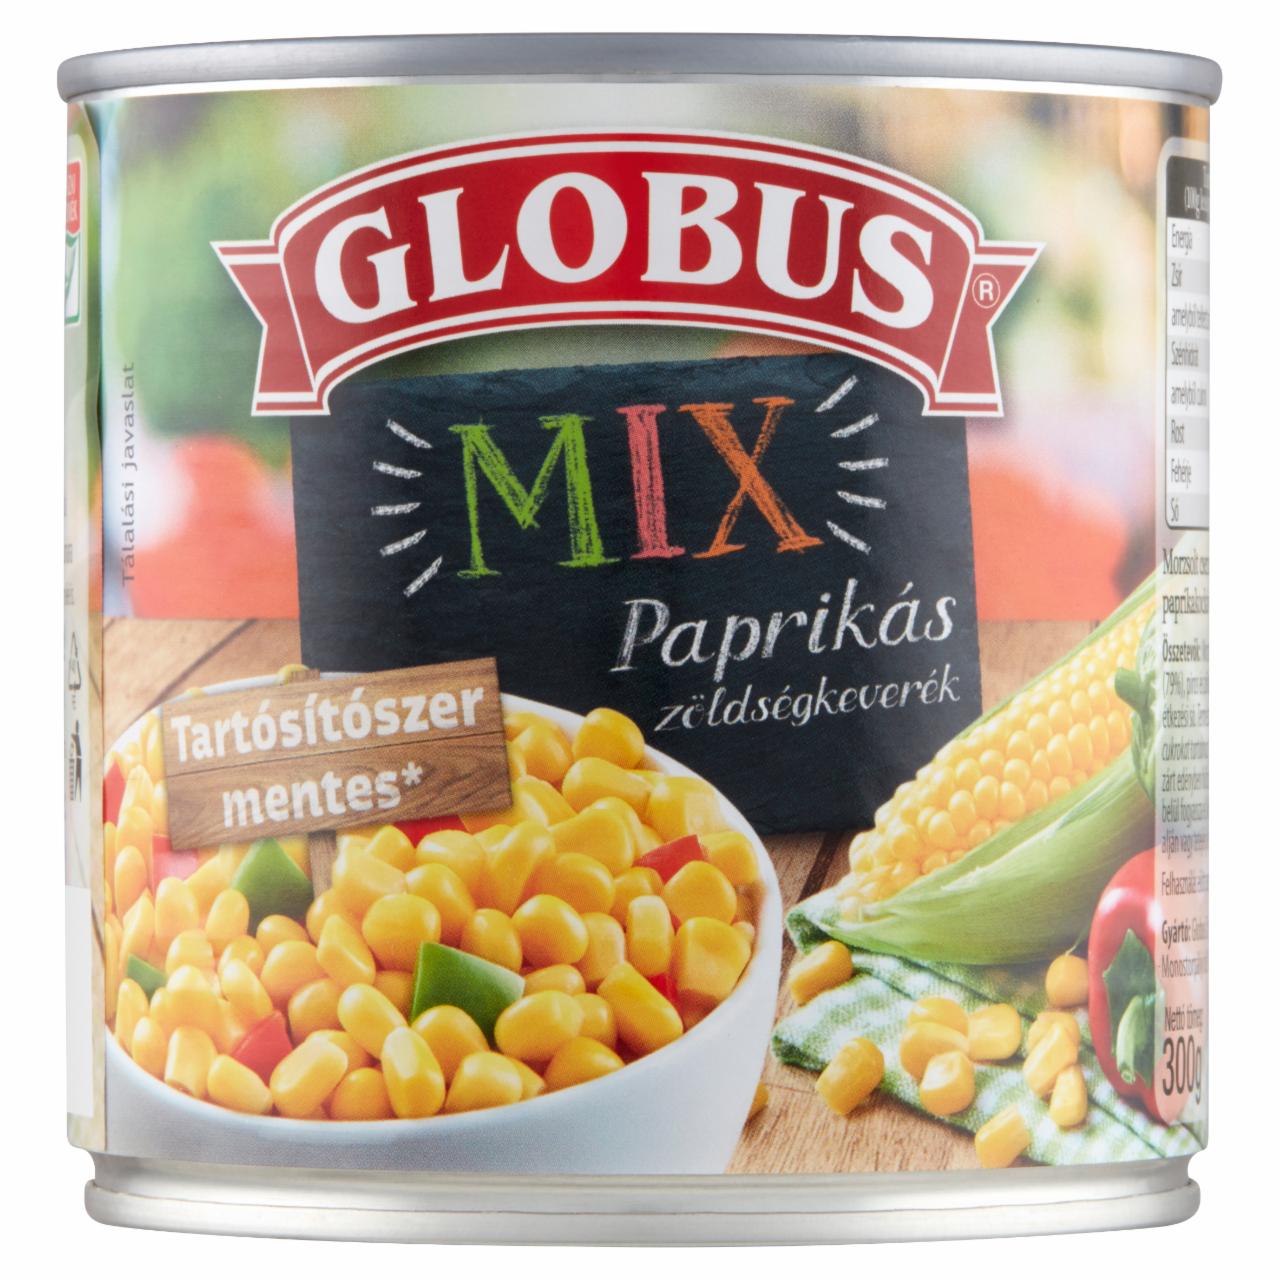 Képek - Globus Mix paprikás zöldségkeverék 300 g